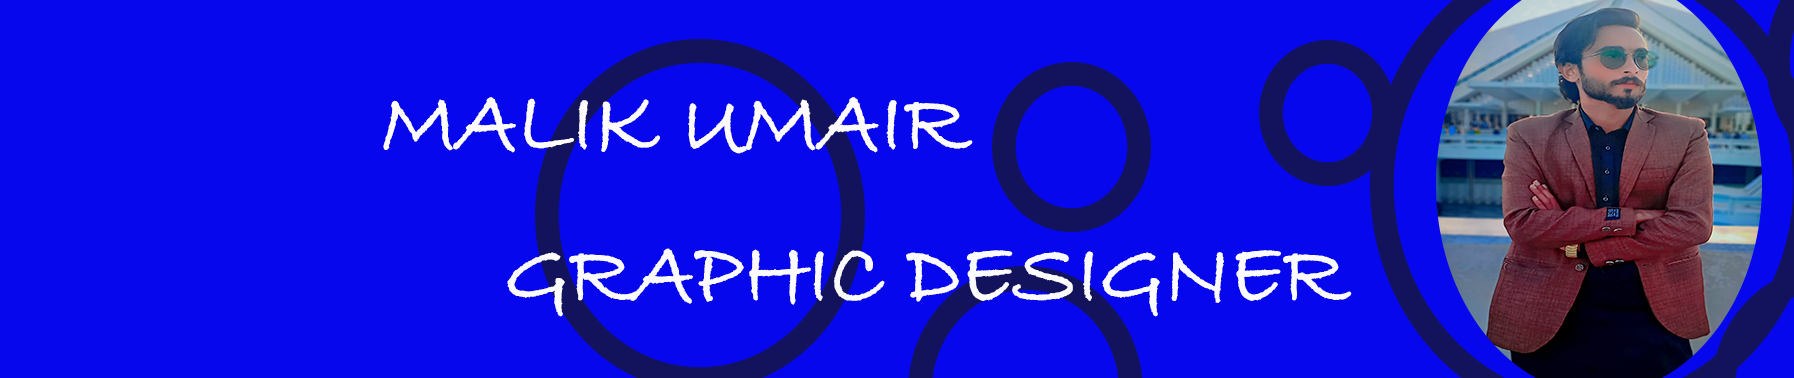 Banner de perfil de Muhammad Umair